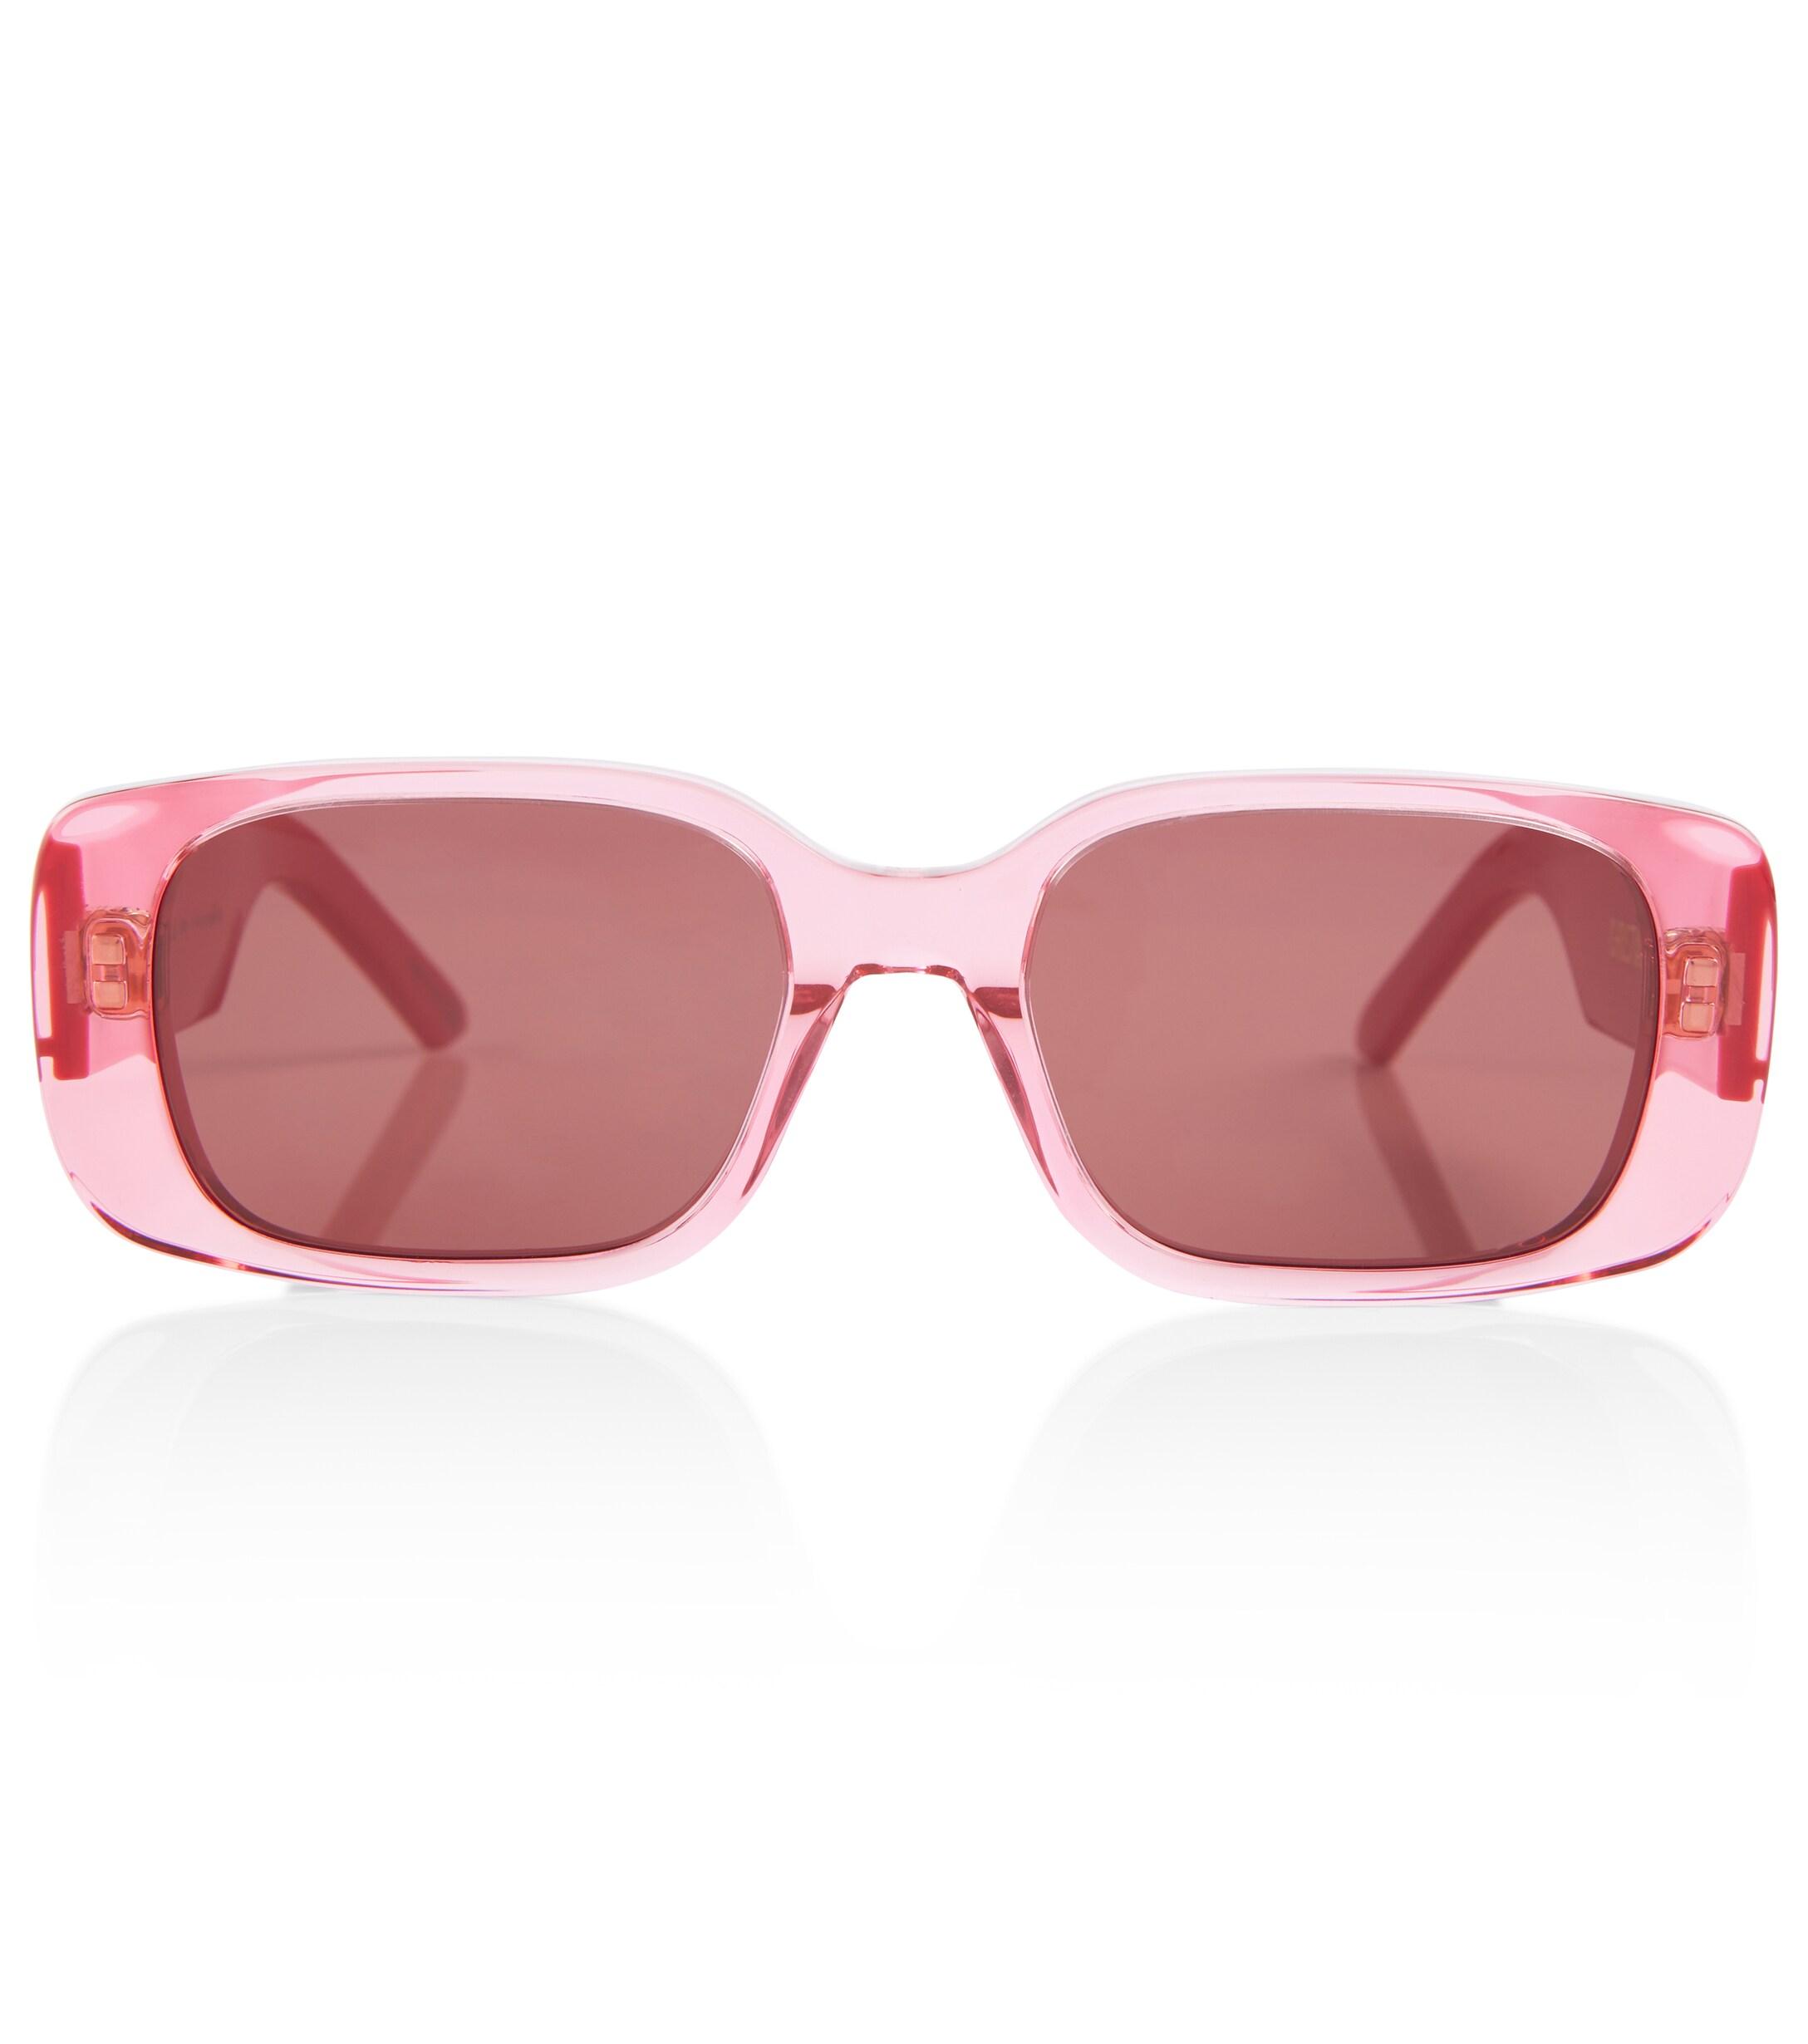 Dior Wildior S2u Sunglasses in Pink - Save 16% | Lyst